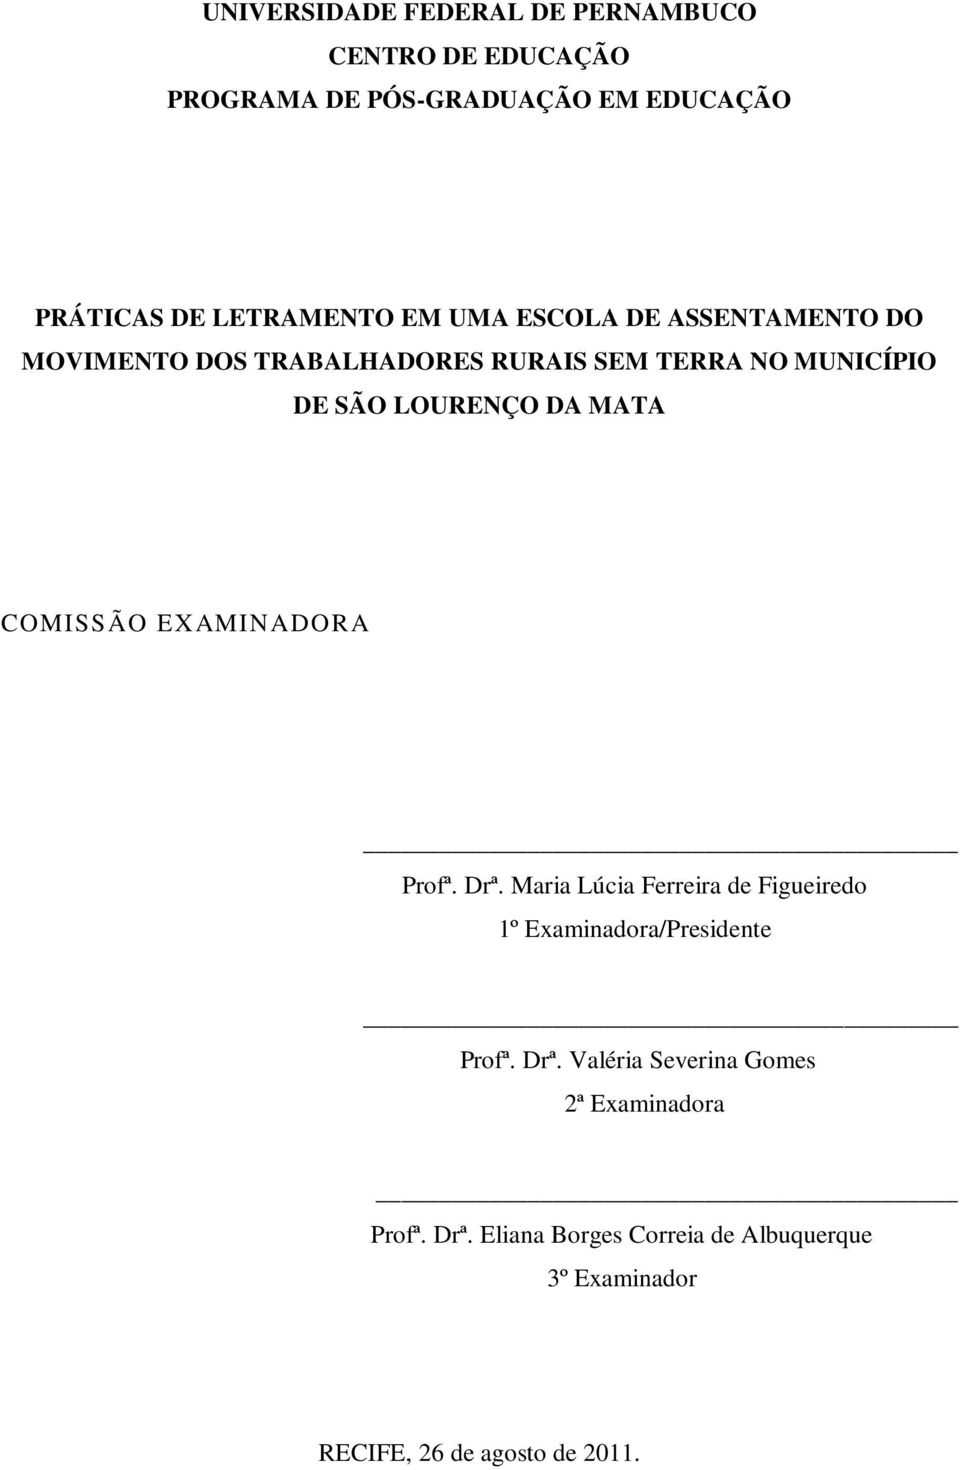 COMISSÃO EXAMINADORA Profª. Drª. Maria Lúcia Ferreira de Figueiredo 1º Examinadora/Presidente Profª. Drª. Valéria Severina Gomes 2ª Examinadora Profª.